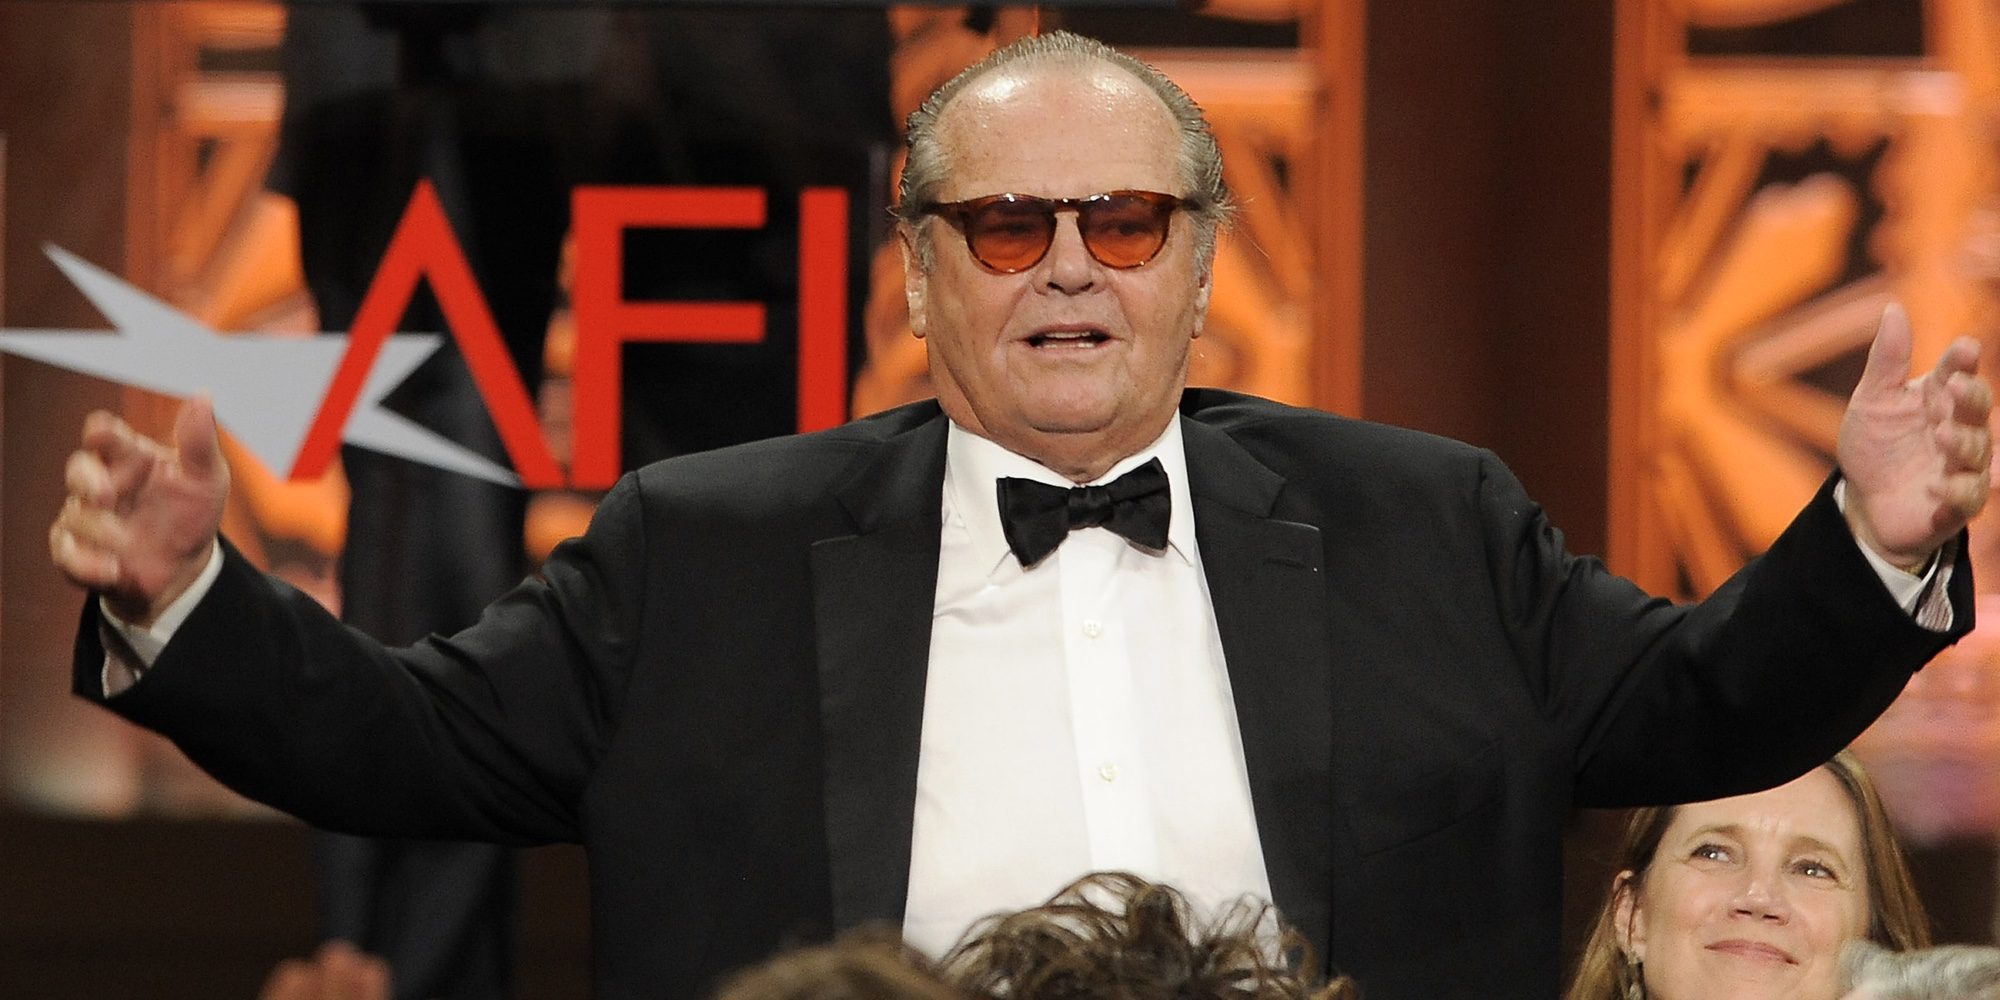 Jack Nicholson vuelve a la gran pantalla tras varios años inactivo